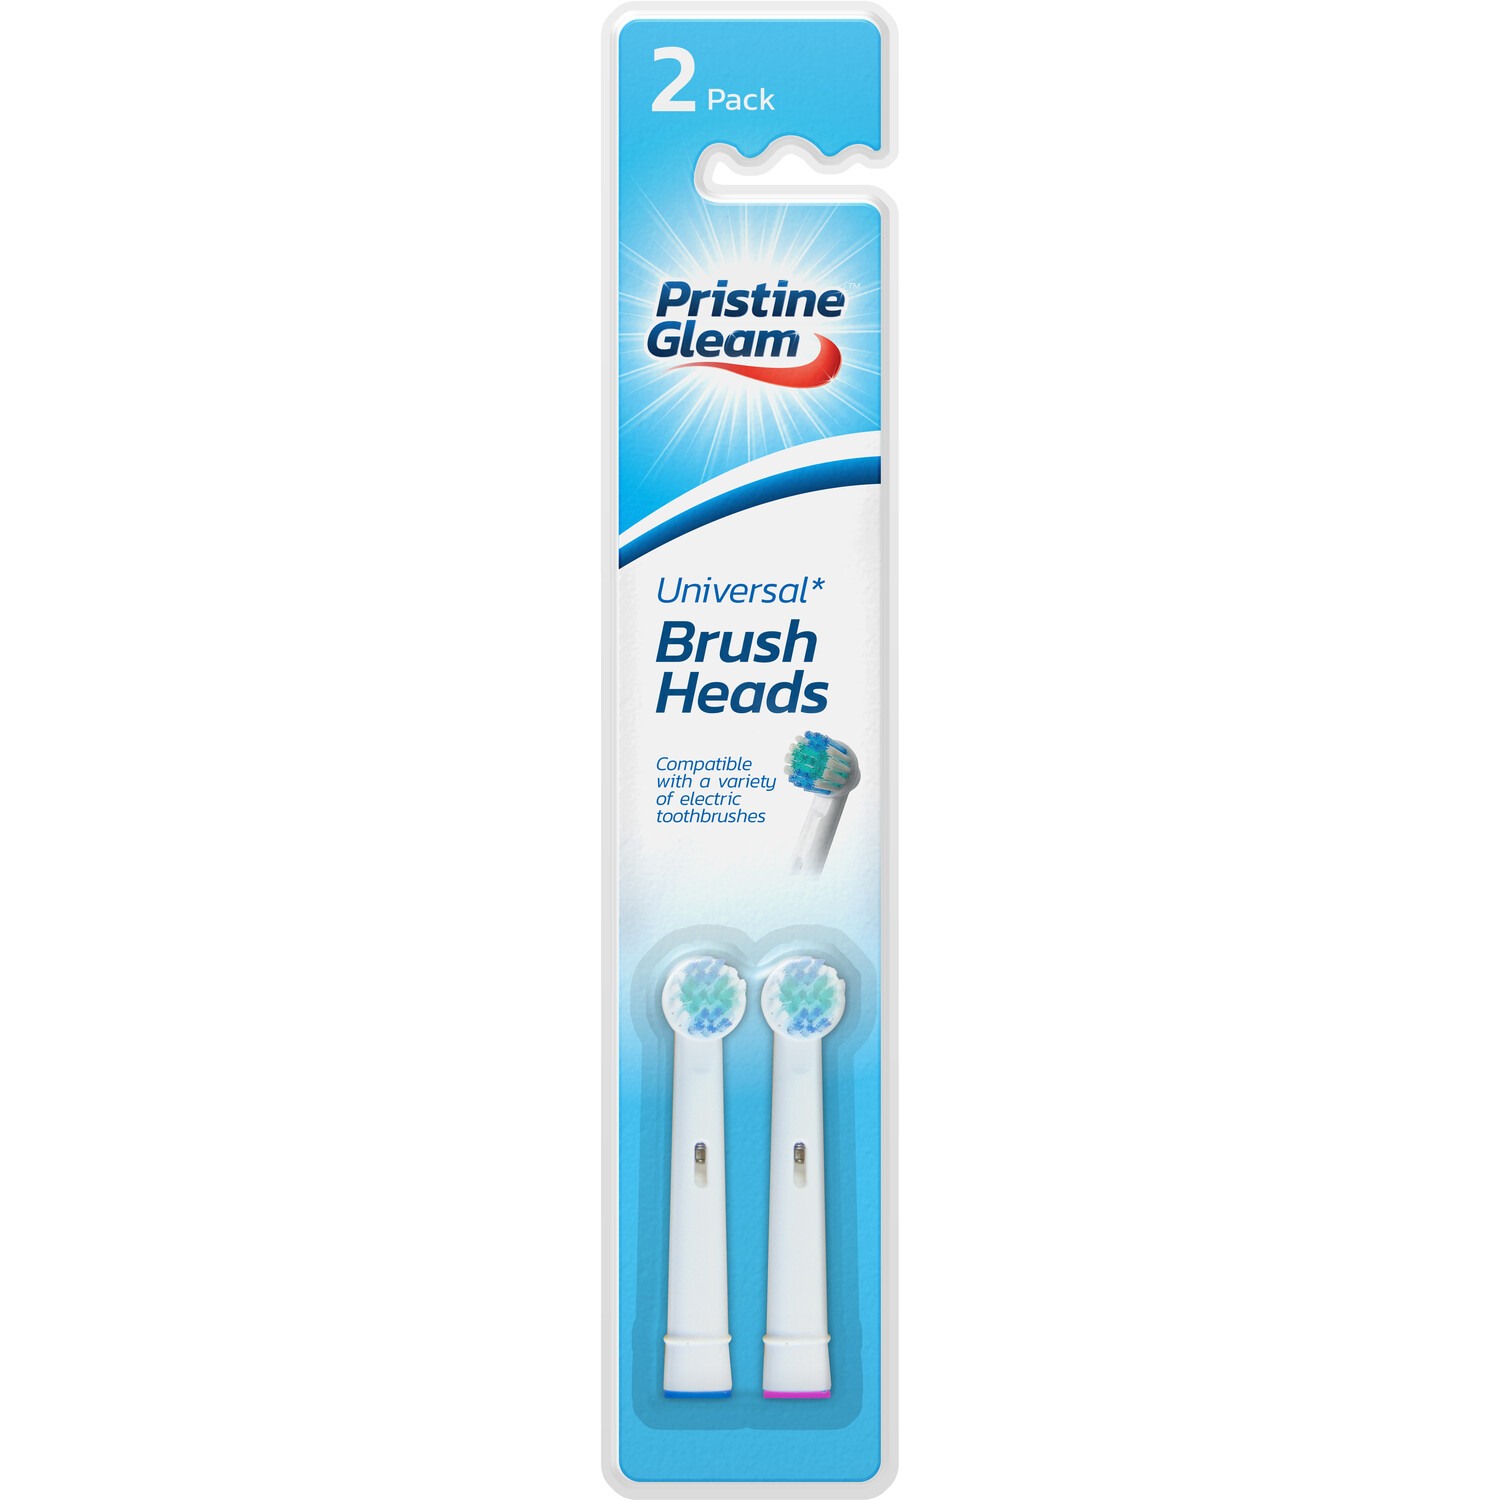 Pack of 2 Pristine Gleam Universal Power Toothbrush Heads Image